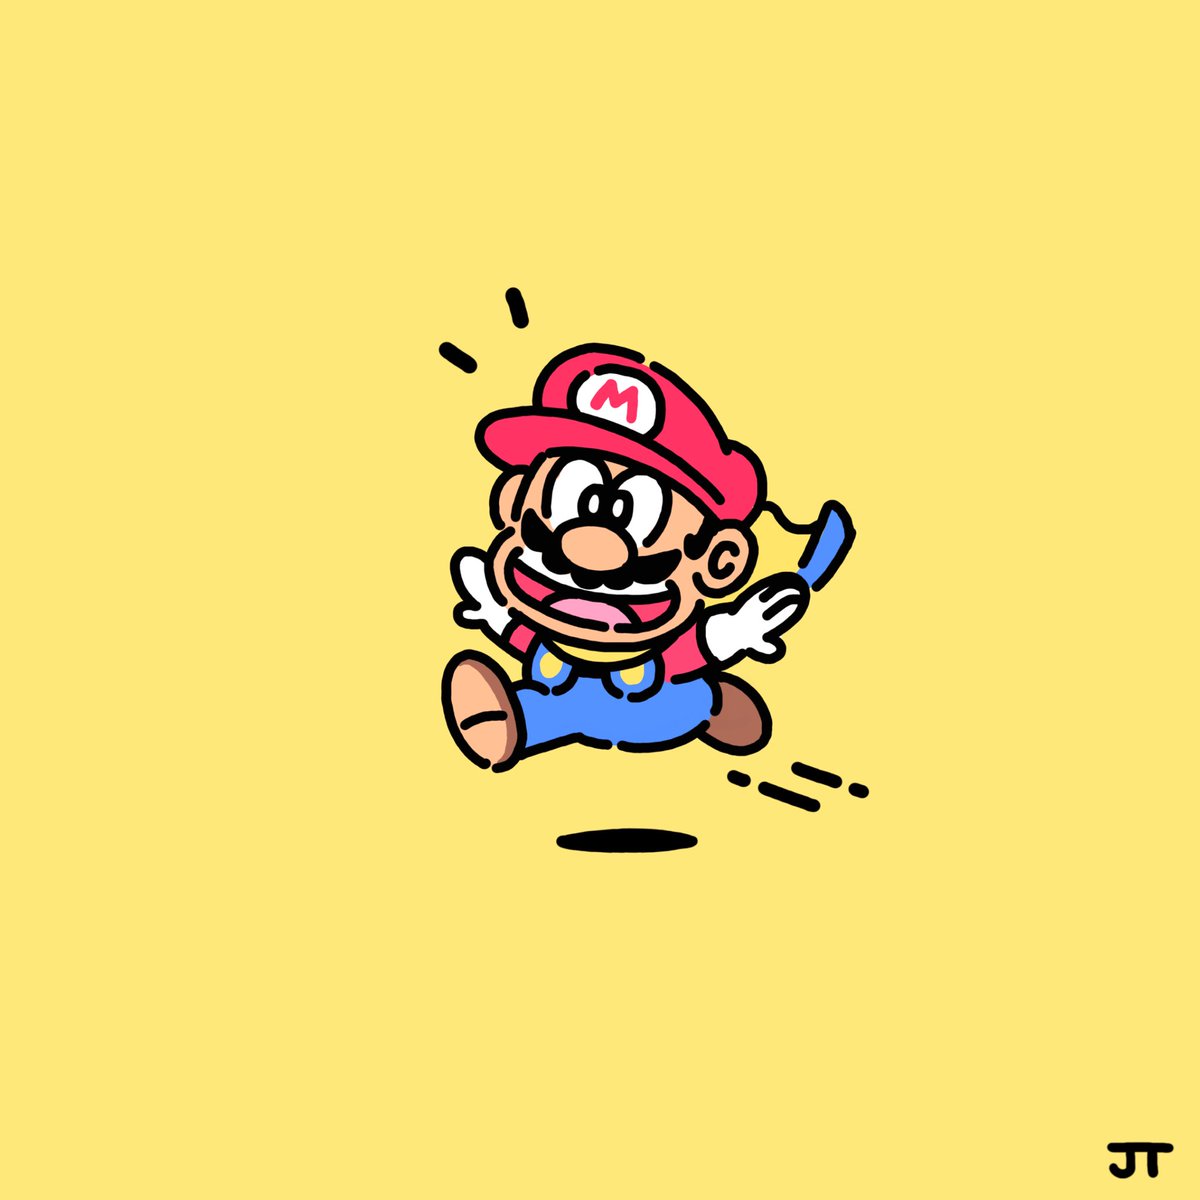 マリオ 「Super Mario-kun 」|James Turnerのイラスト